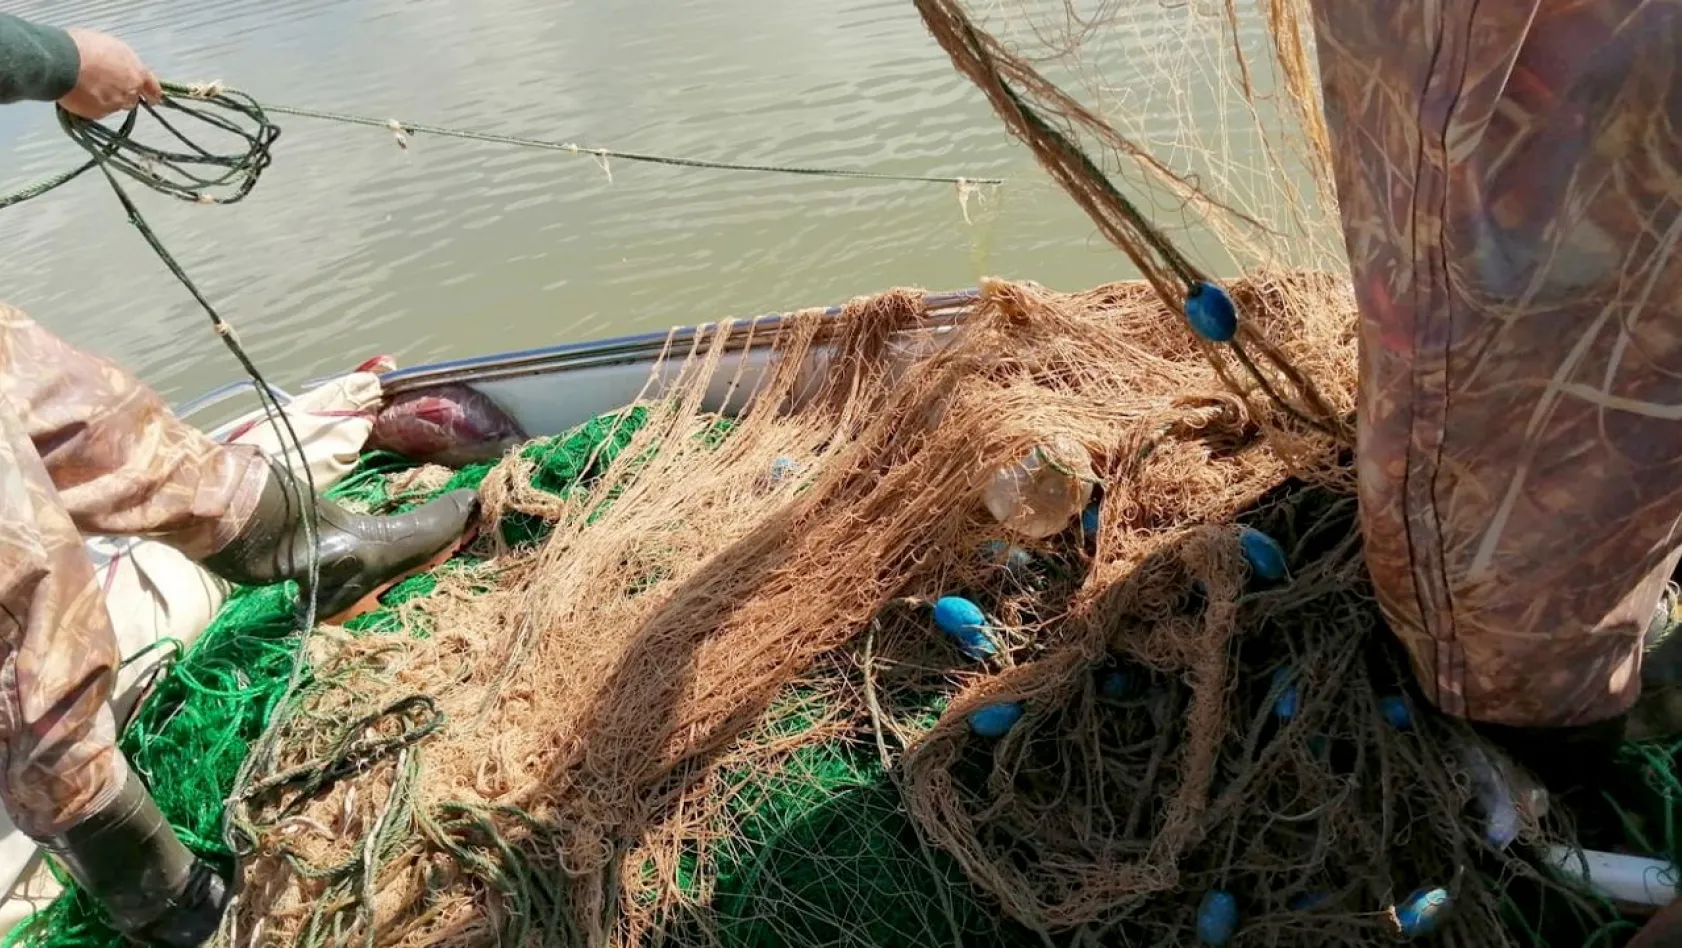 Elazığ'da 100 kilo canlı balık ele geçirildi!